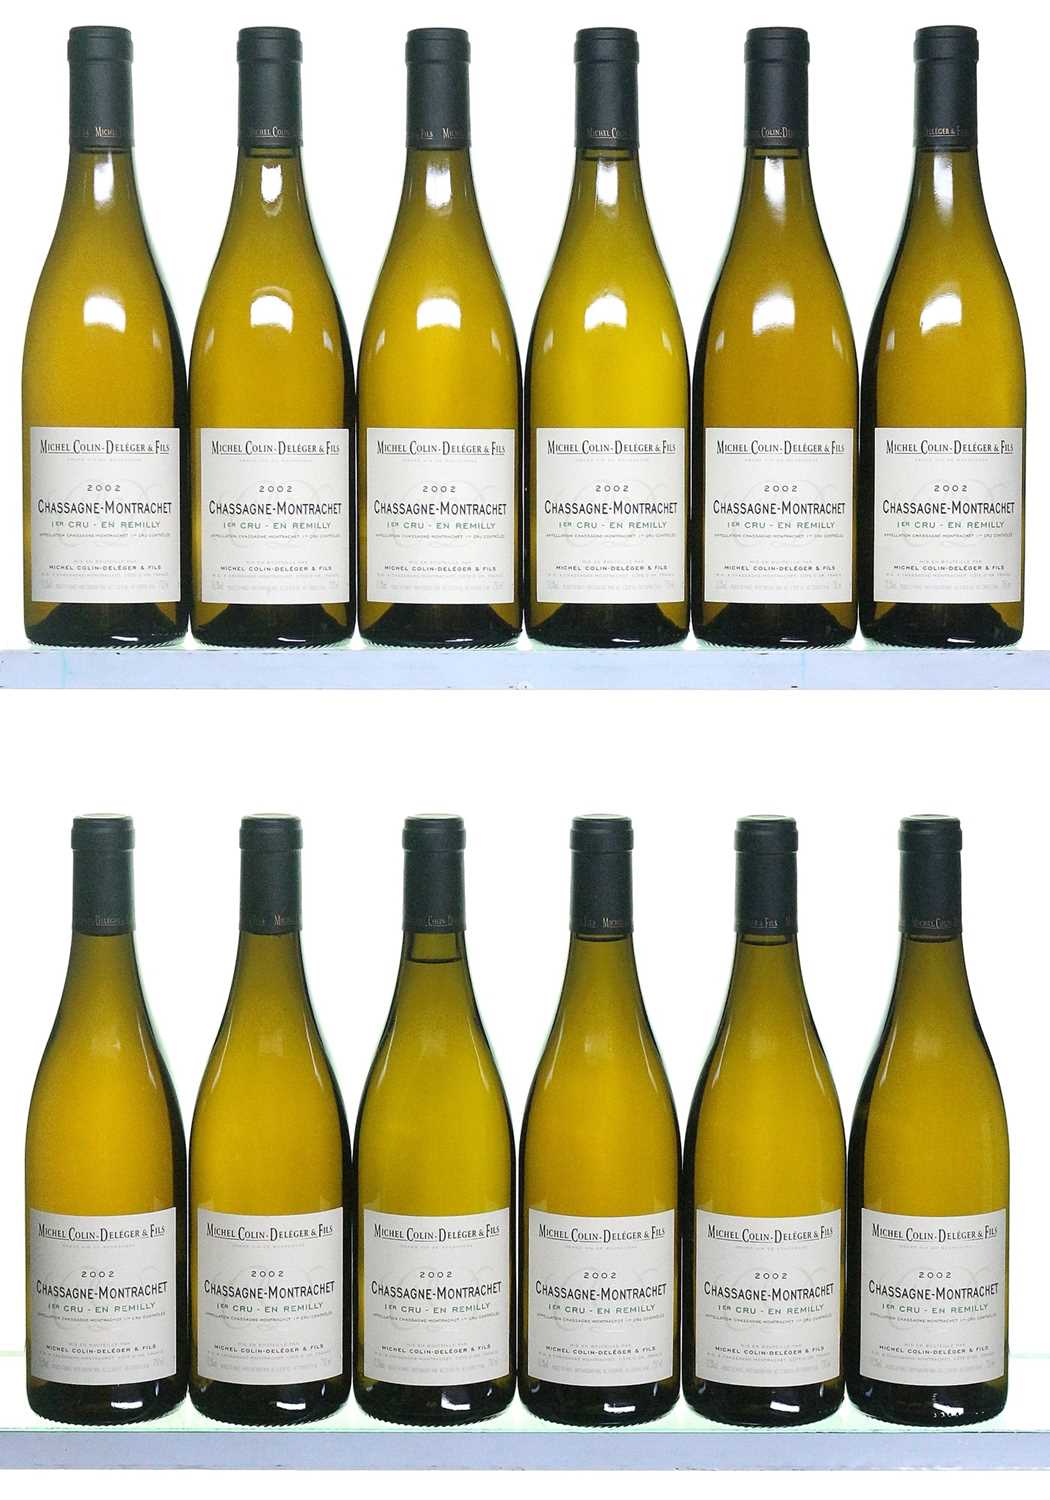 Lot 151 - 12 bottles 2002 Chassagne-Montrachet En Remilly Colin-Deleger